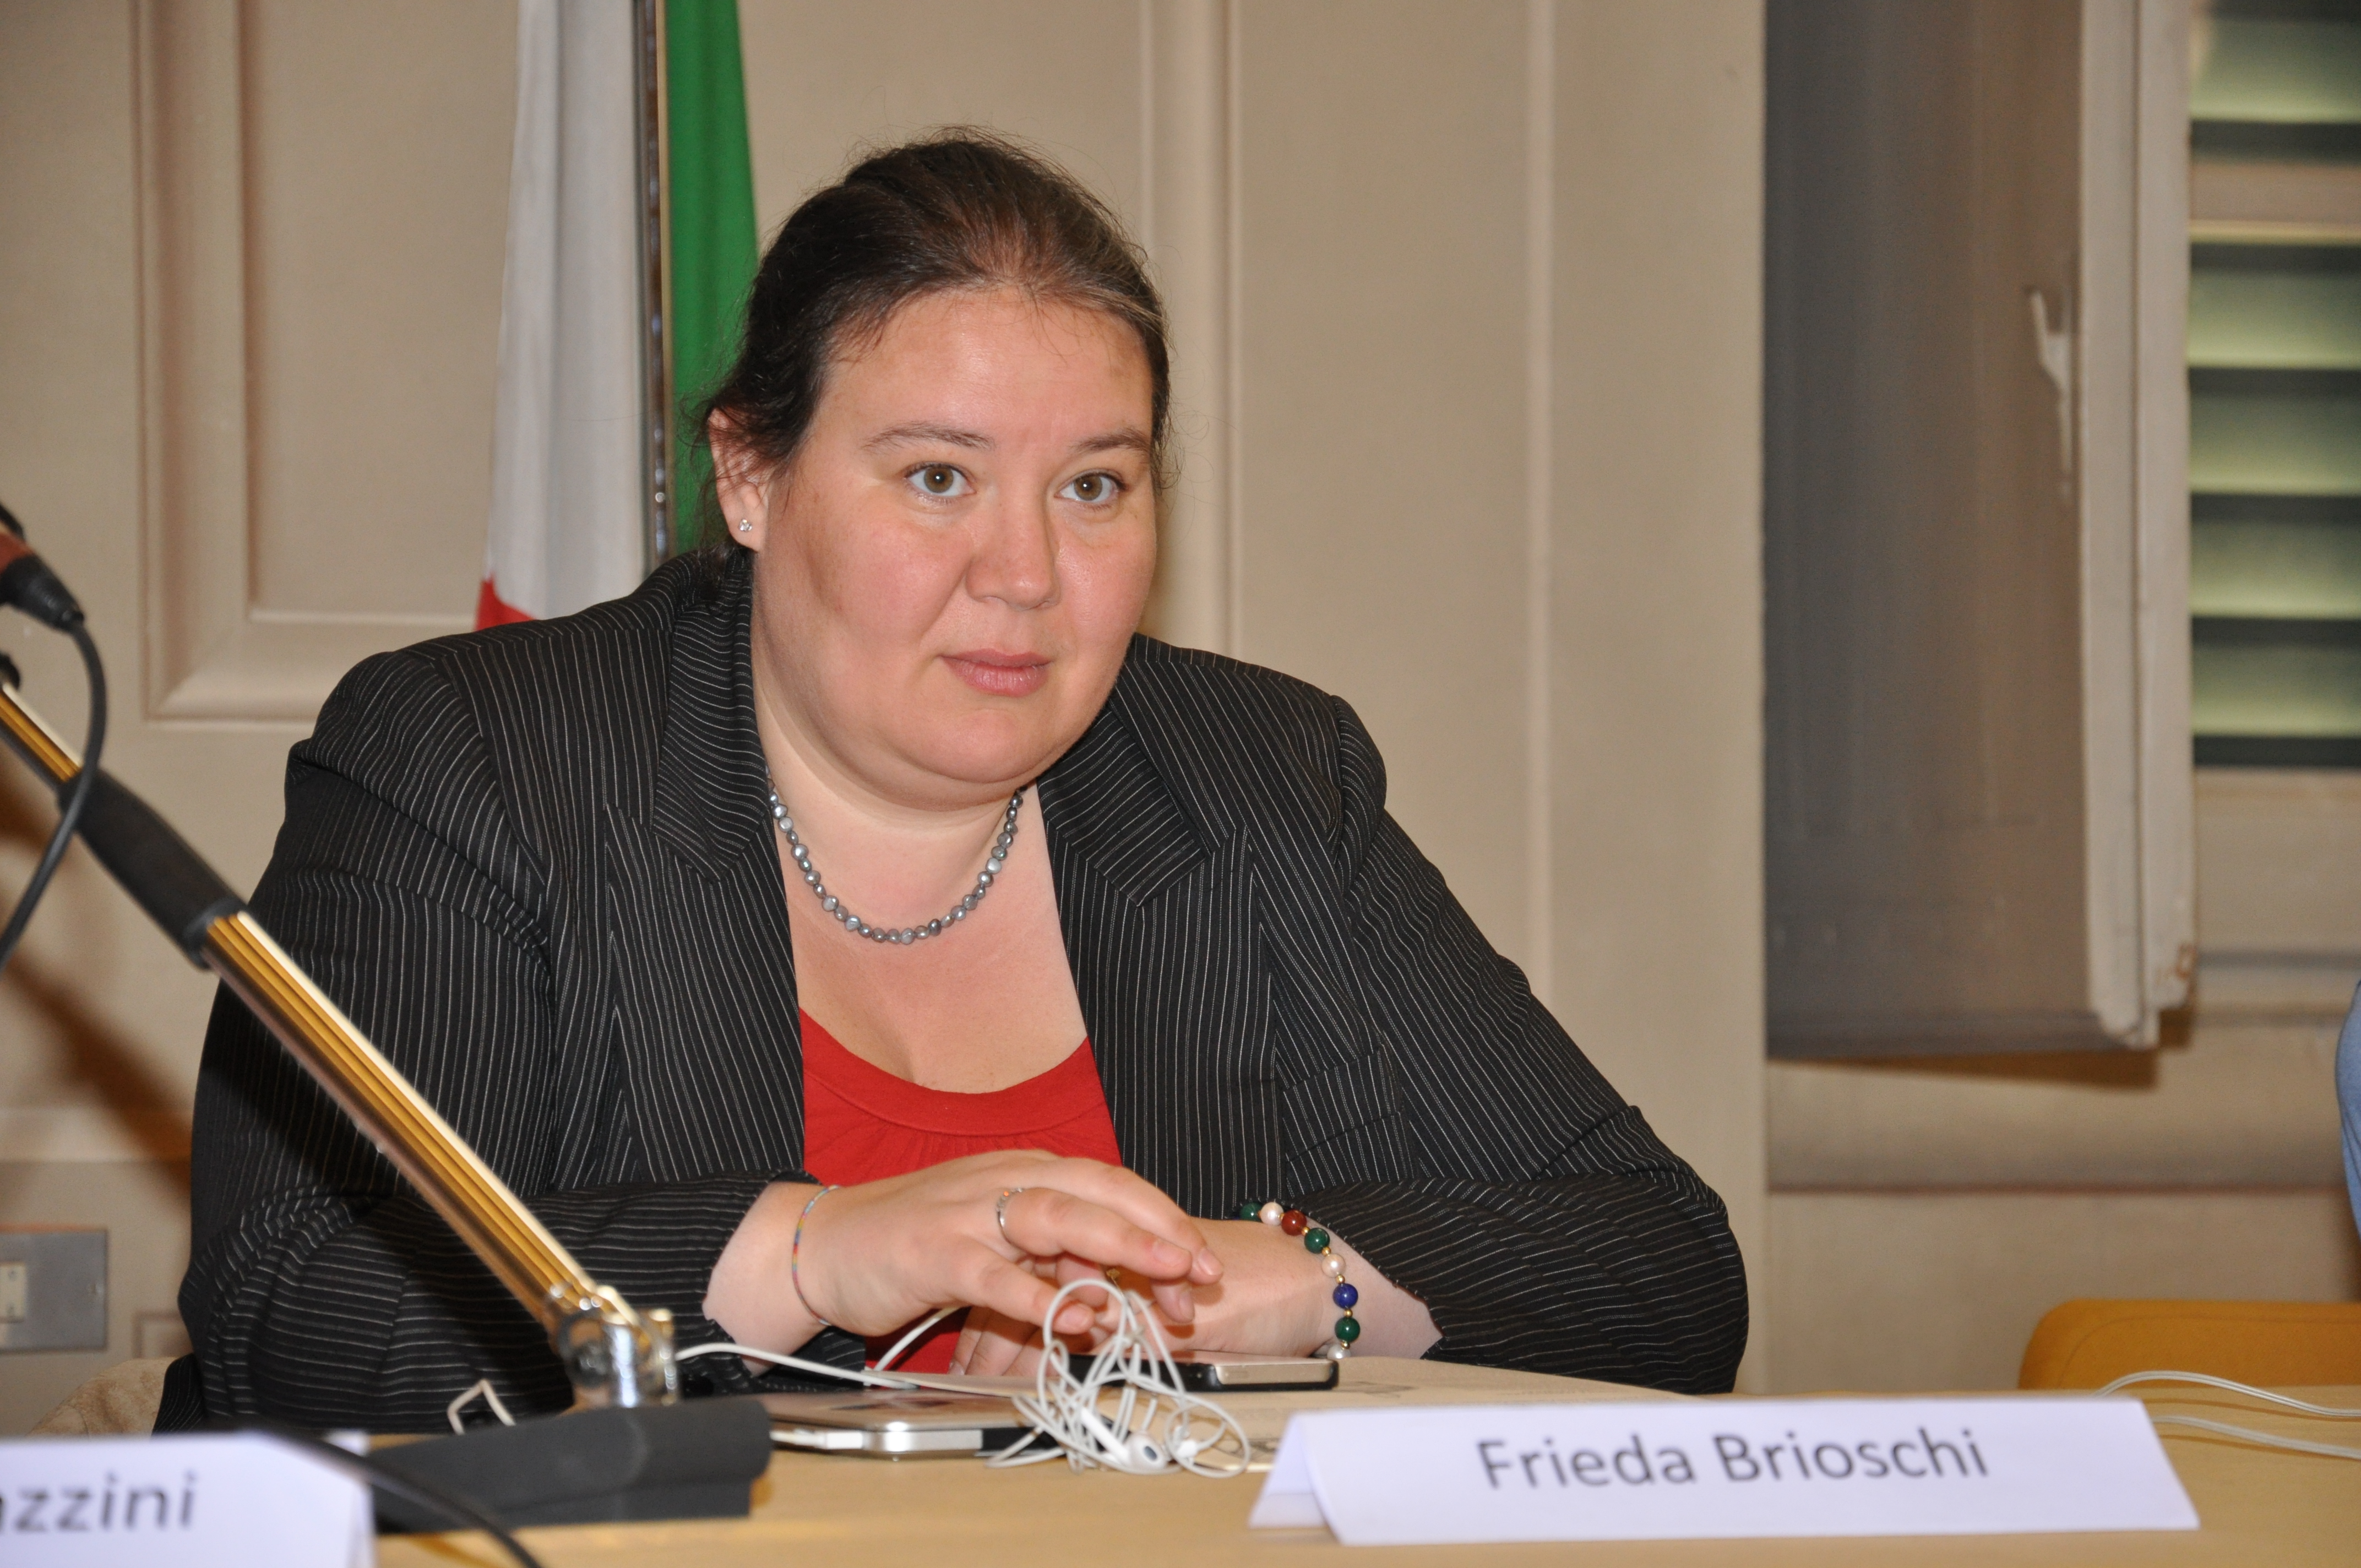 Frieda Brioschi